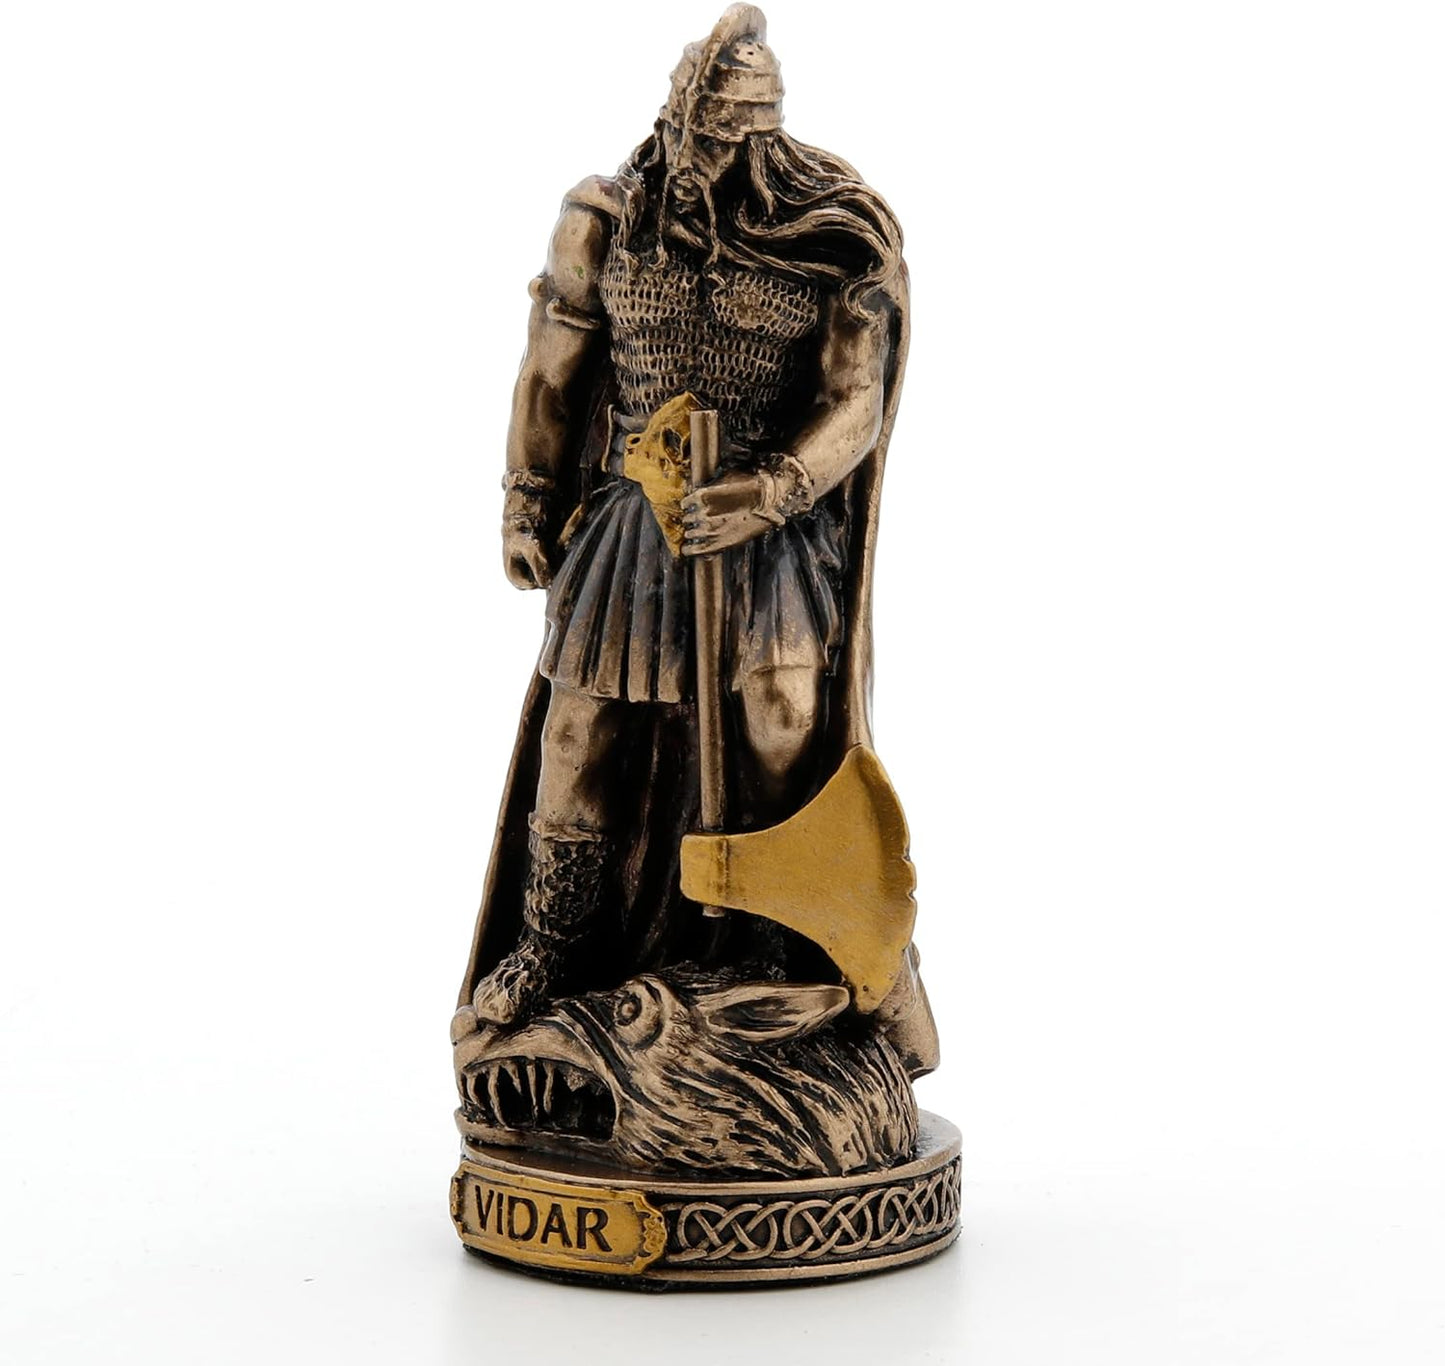 Vidar Norse Gods Miniature Figurine